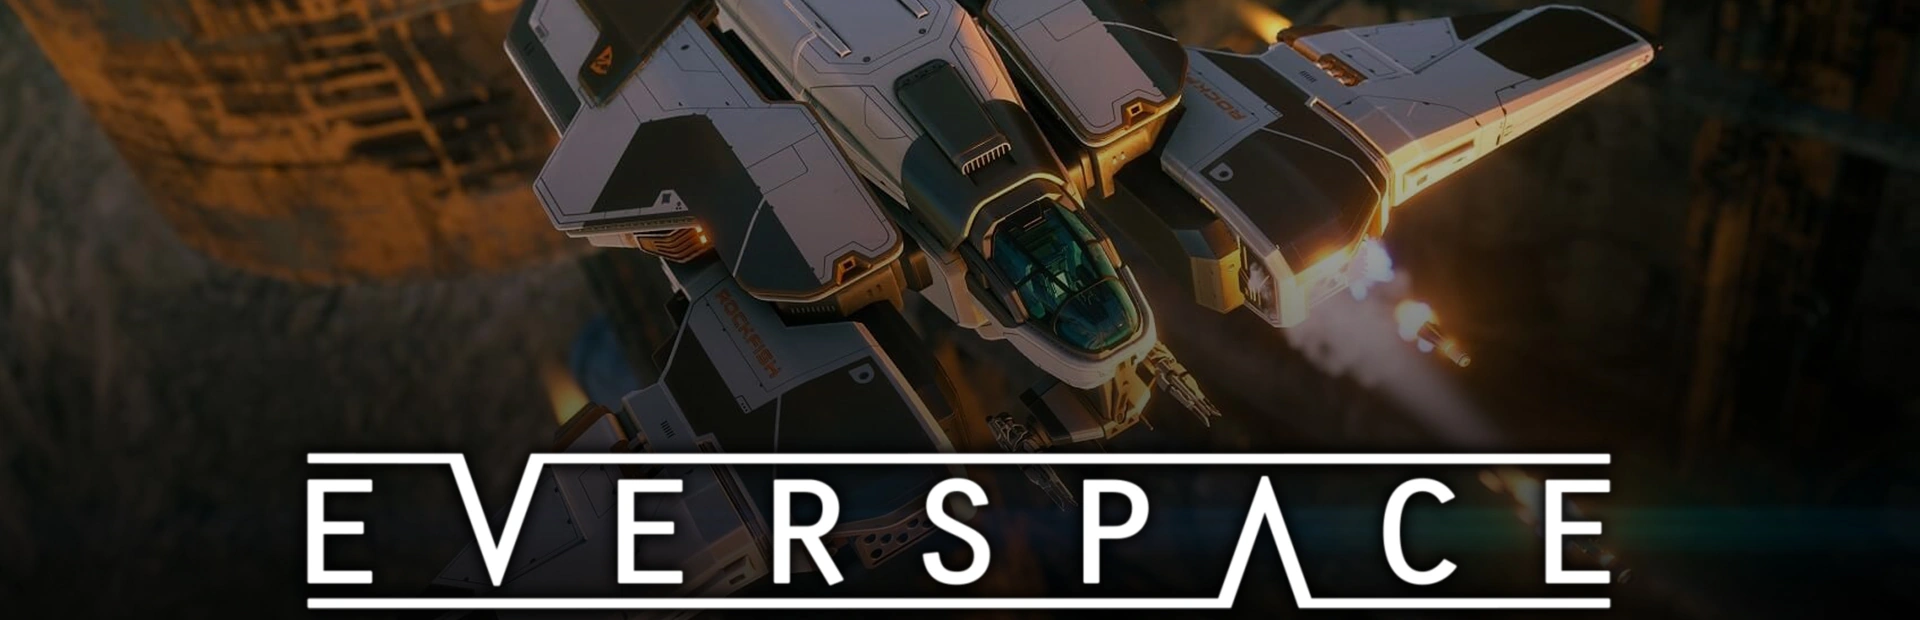 دانلود بازی Everspace برای کامپیوتر | گیمباتو